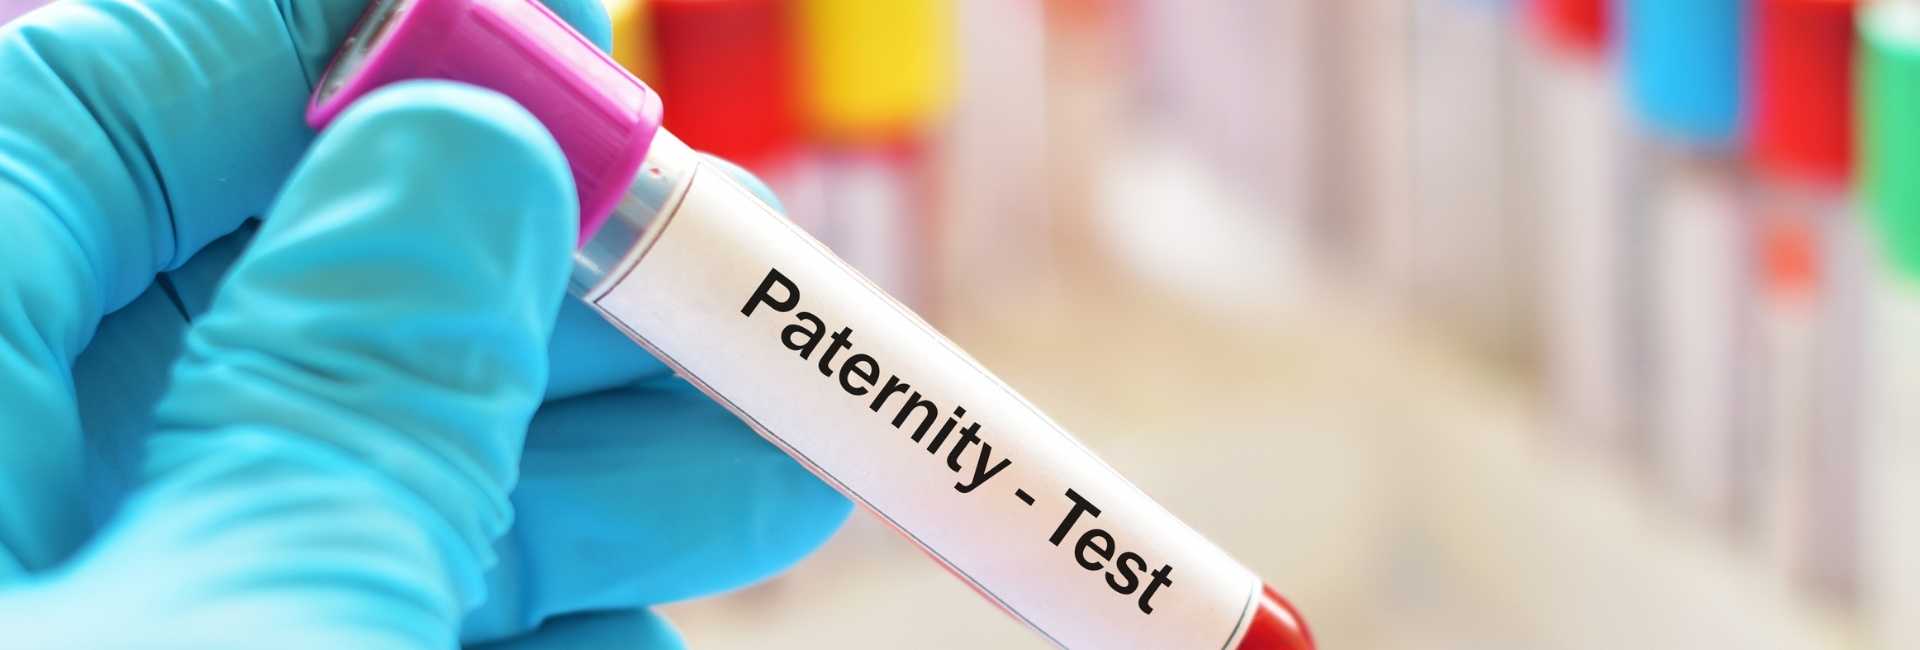 Test de paternité prénatal : levez les doutes sur l'identité du futur père !